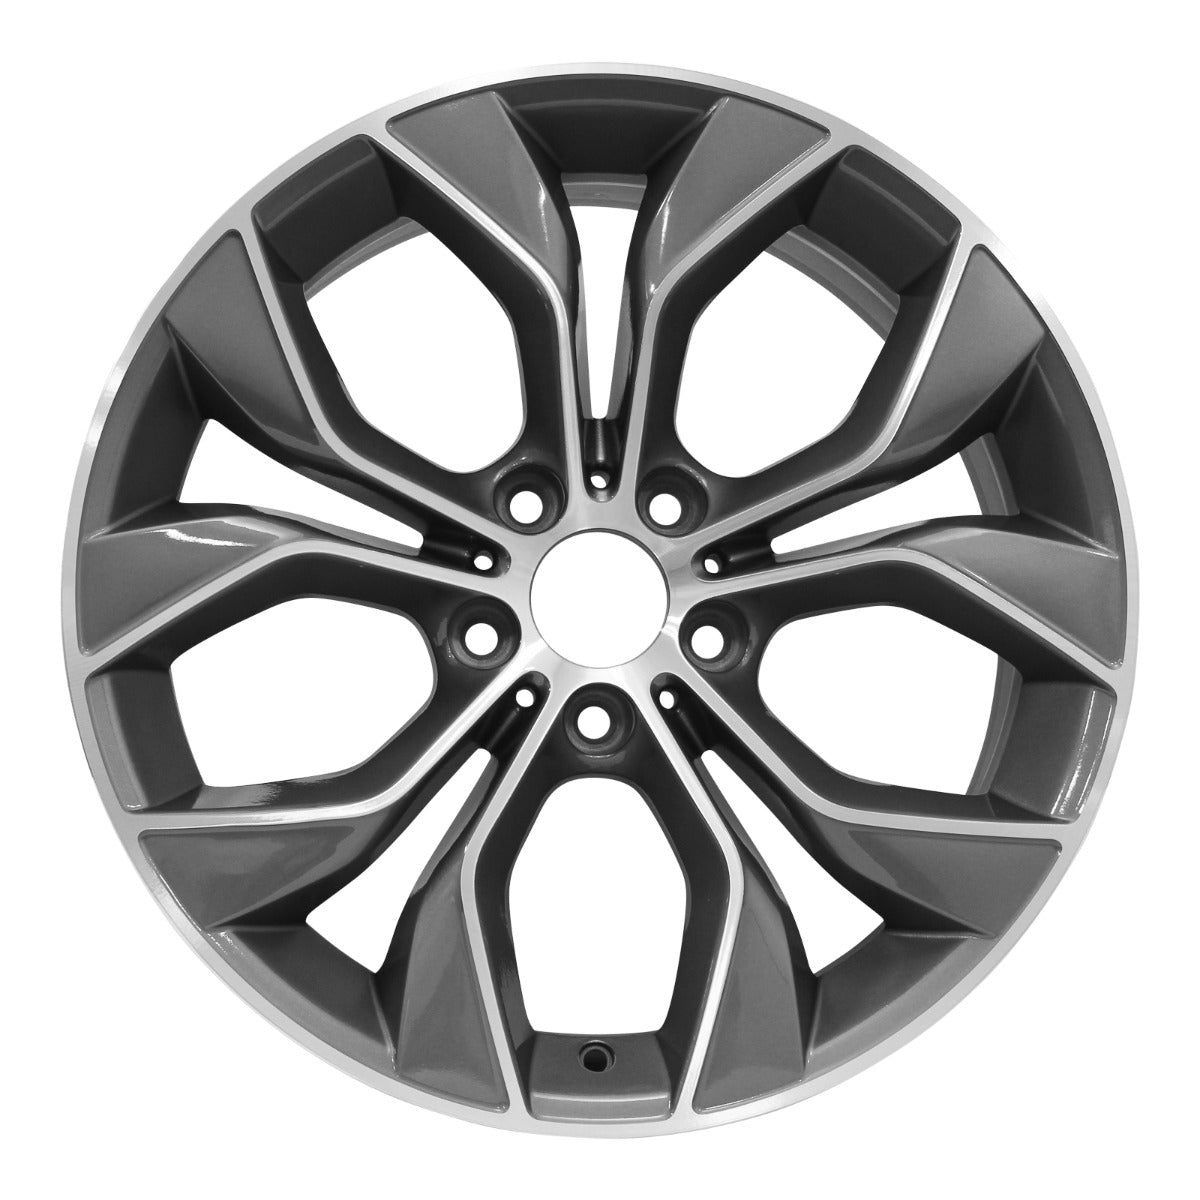 2016 BMW X3 19" Rear OEM Wheel Rim Style 608 W86106MC